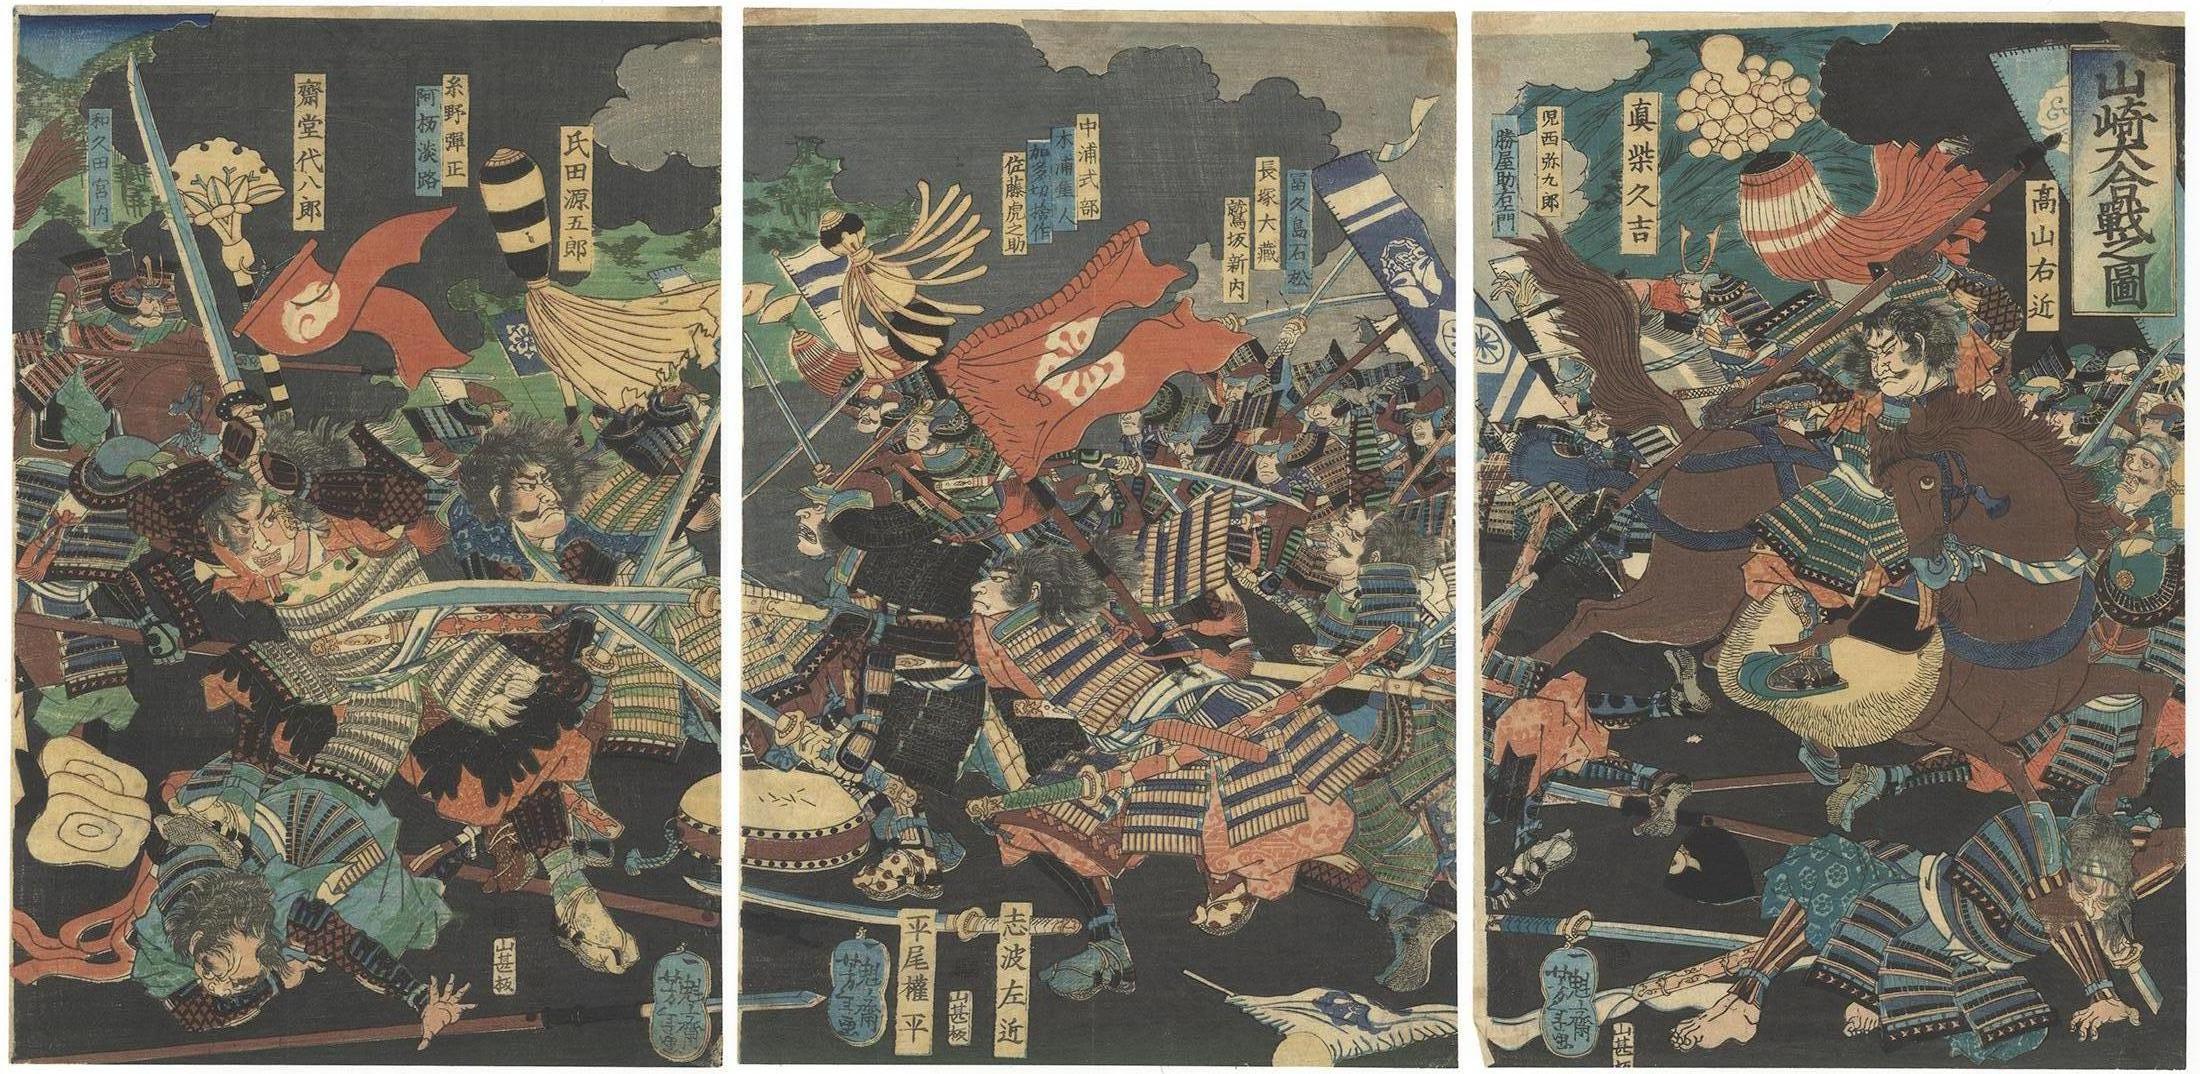 Tsukioka Yoshitoshi Figurative Print - Sengoku Period, Yoshitoshi, Original Japanese Woodblock Print, Ukiyo-e, Samurai